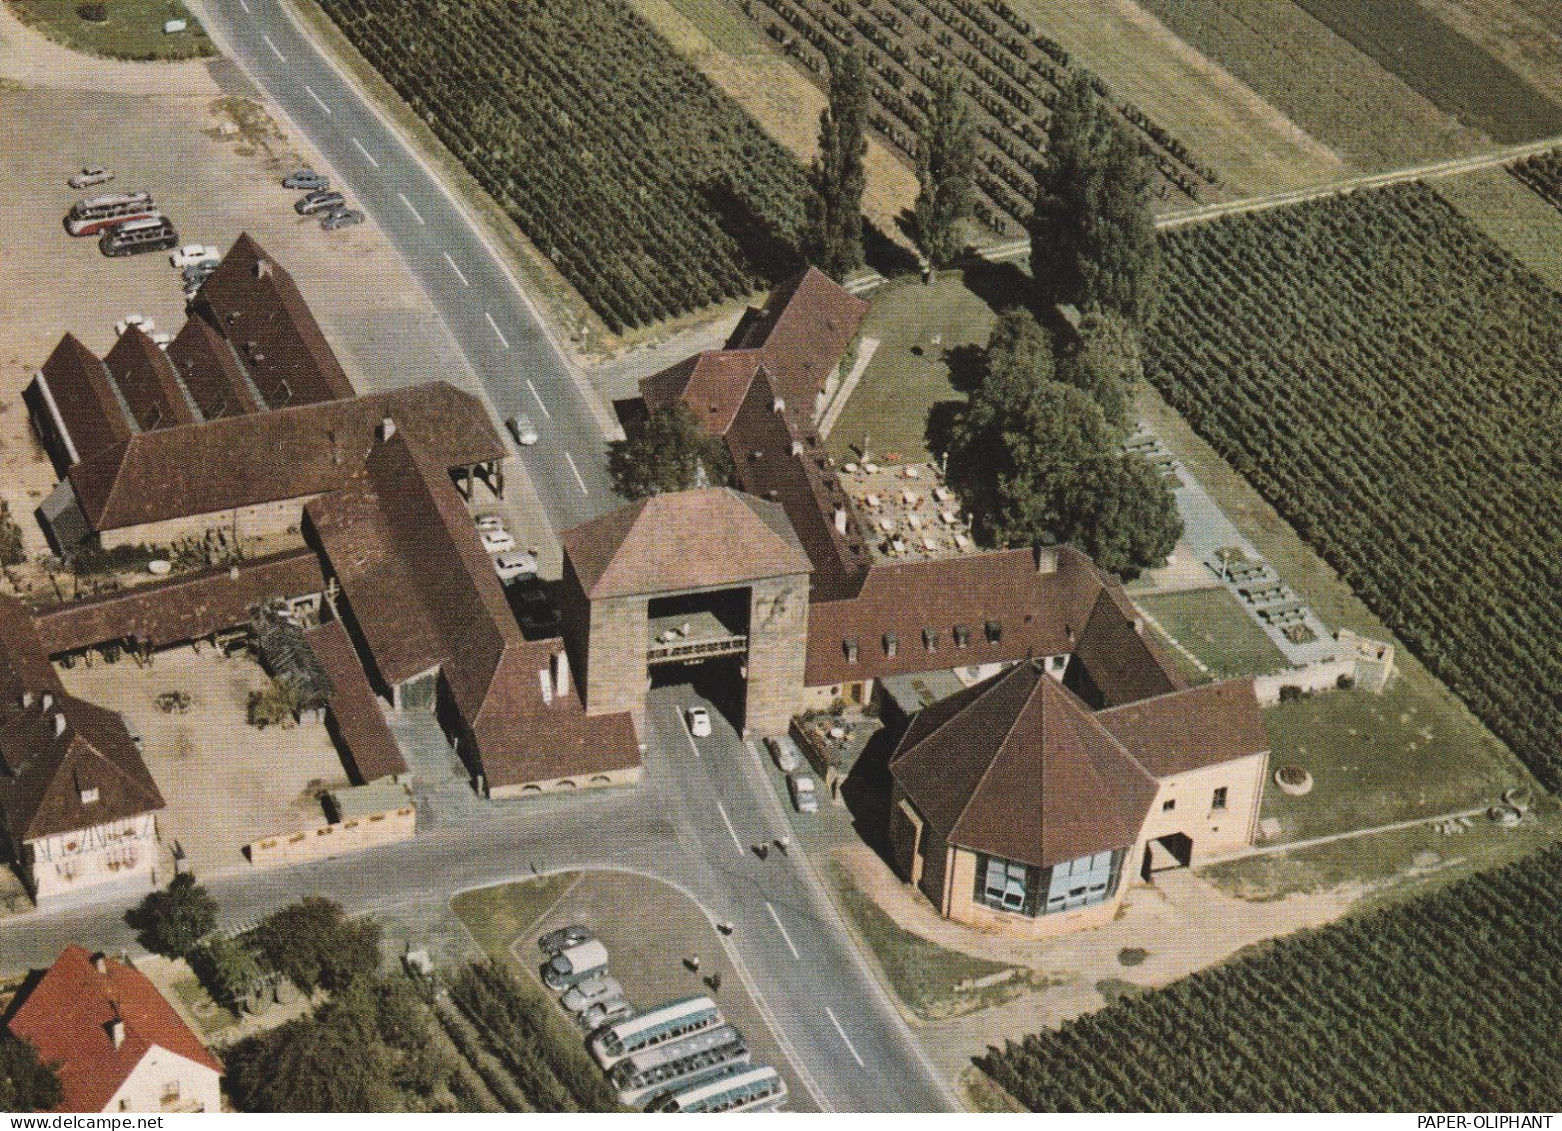 6749 SCHWEIGERN, Deutsches Weintor, Luftaufnahme, 1968 - Bad Bergzabern